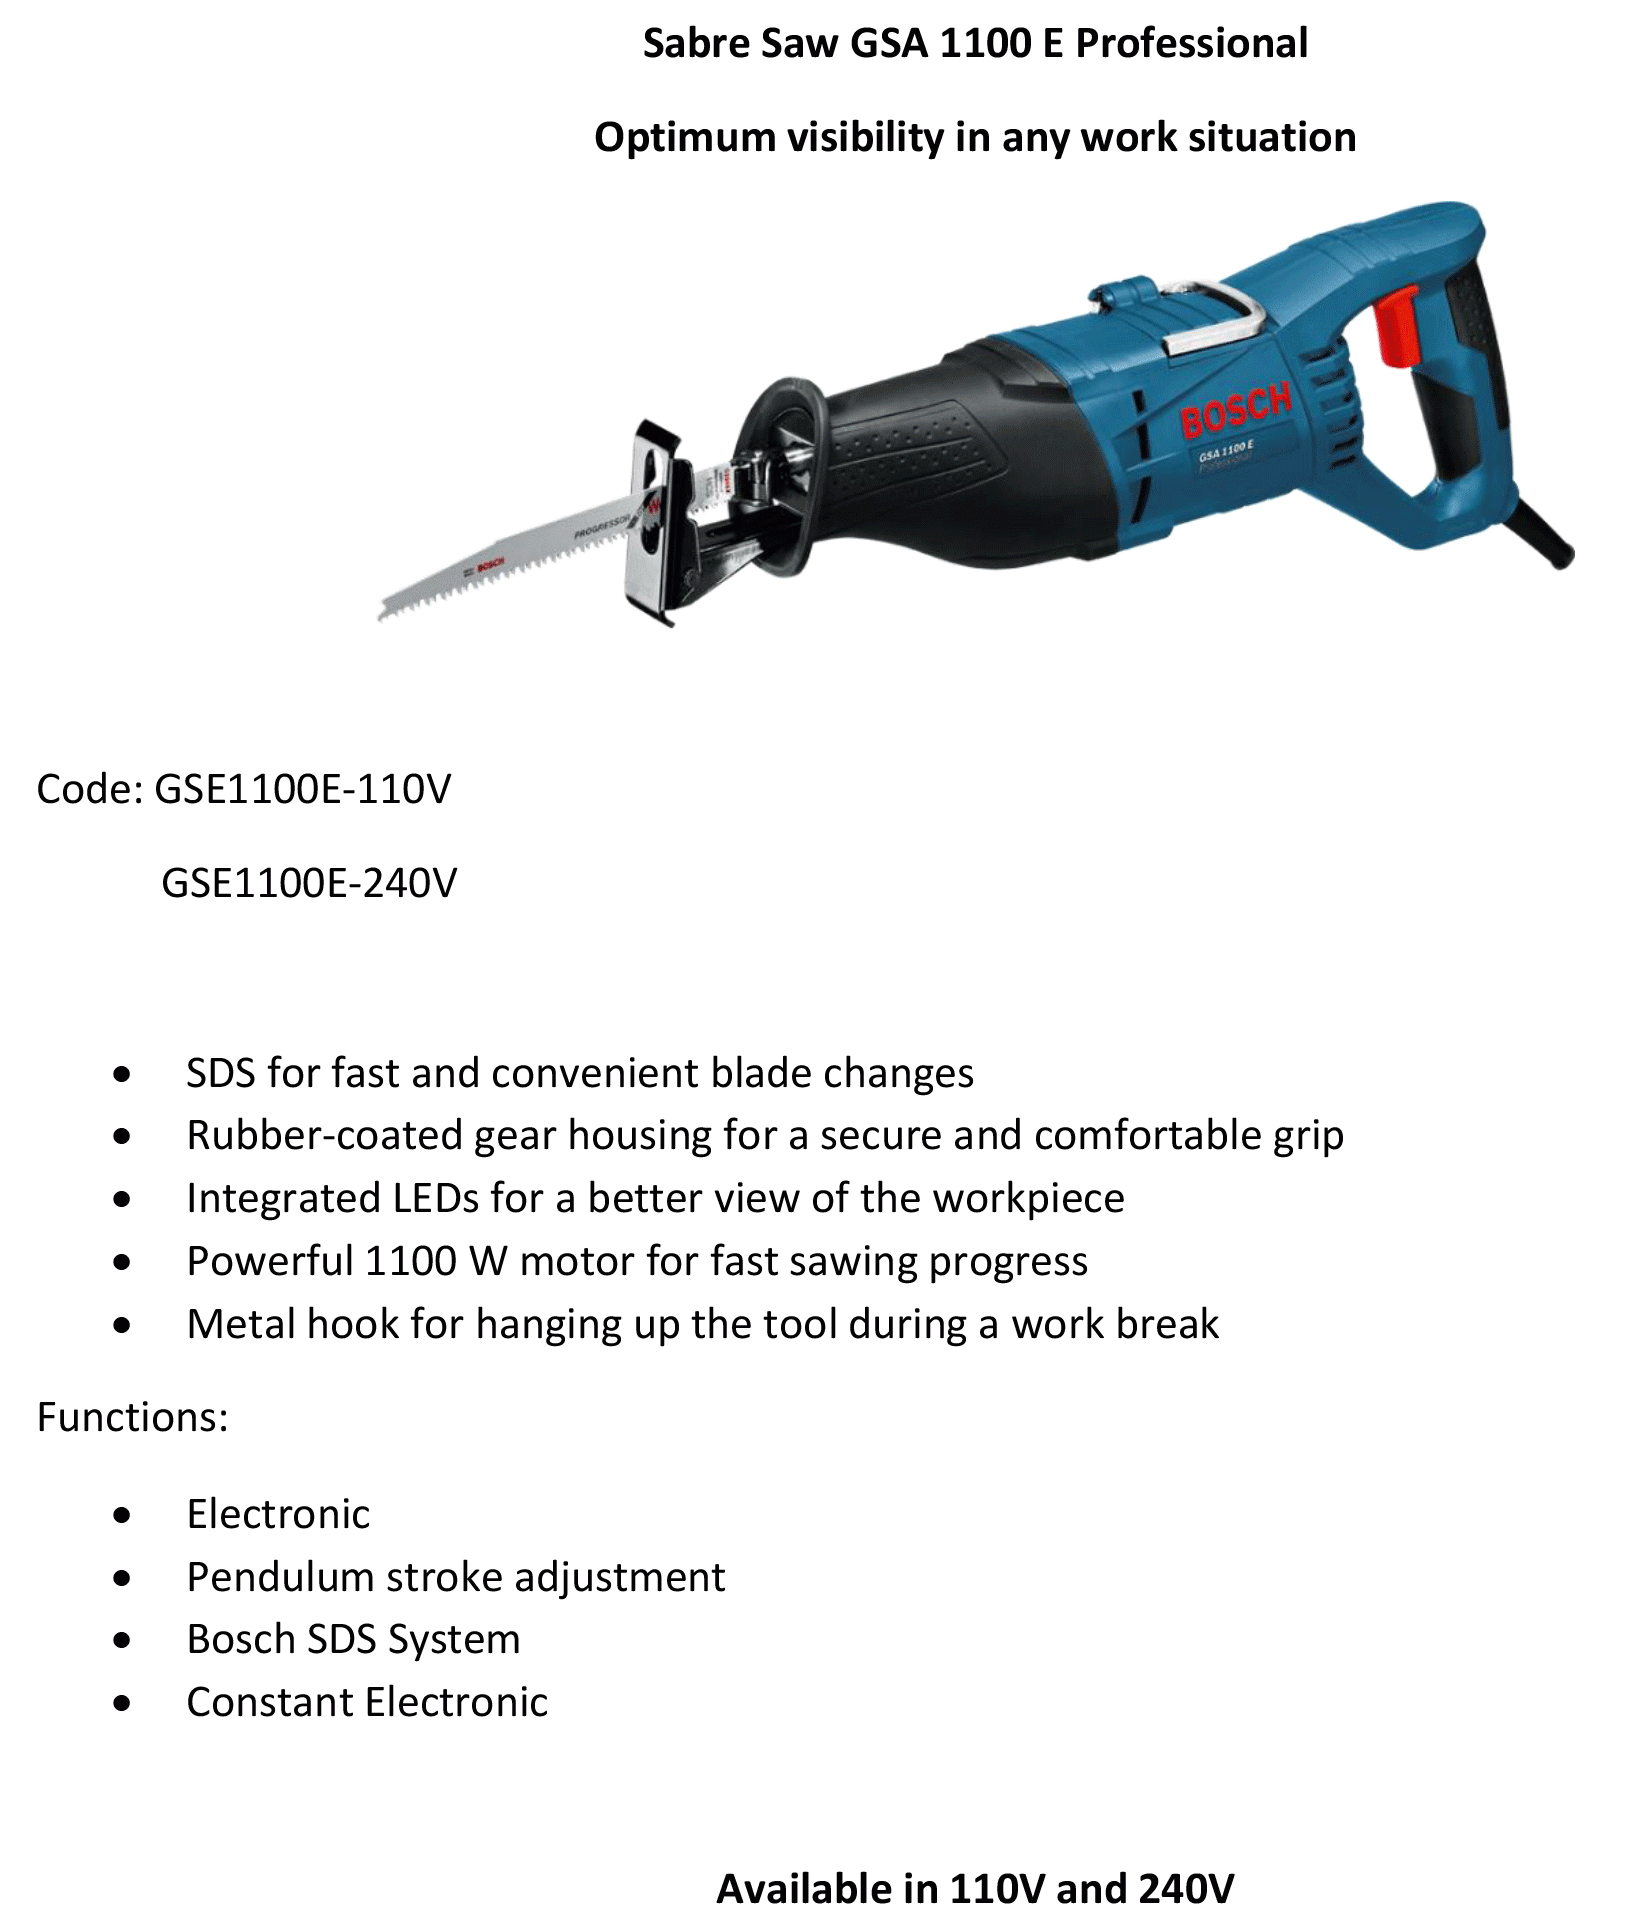 Sabre-Saw-GSA-1100-E-Professional-info.g